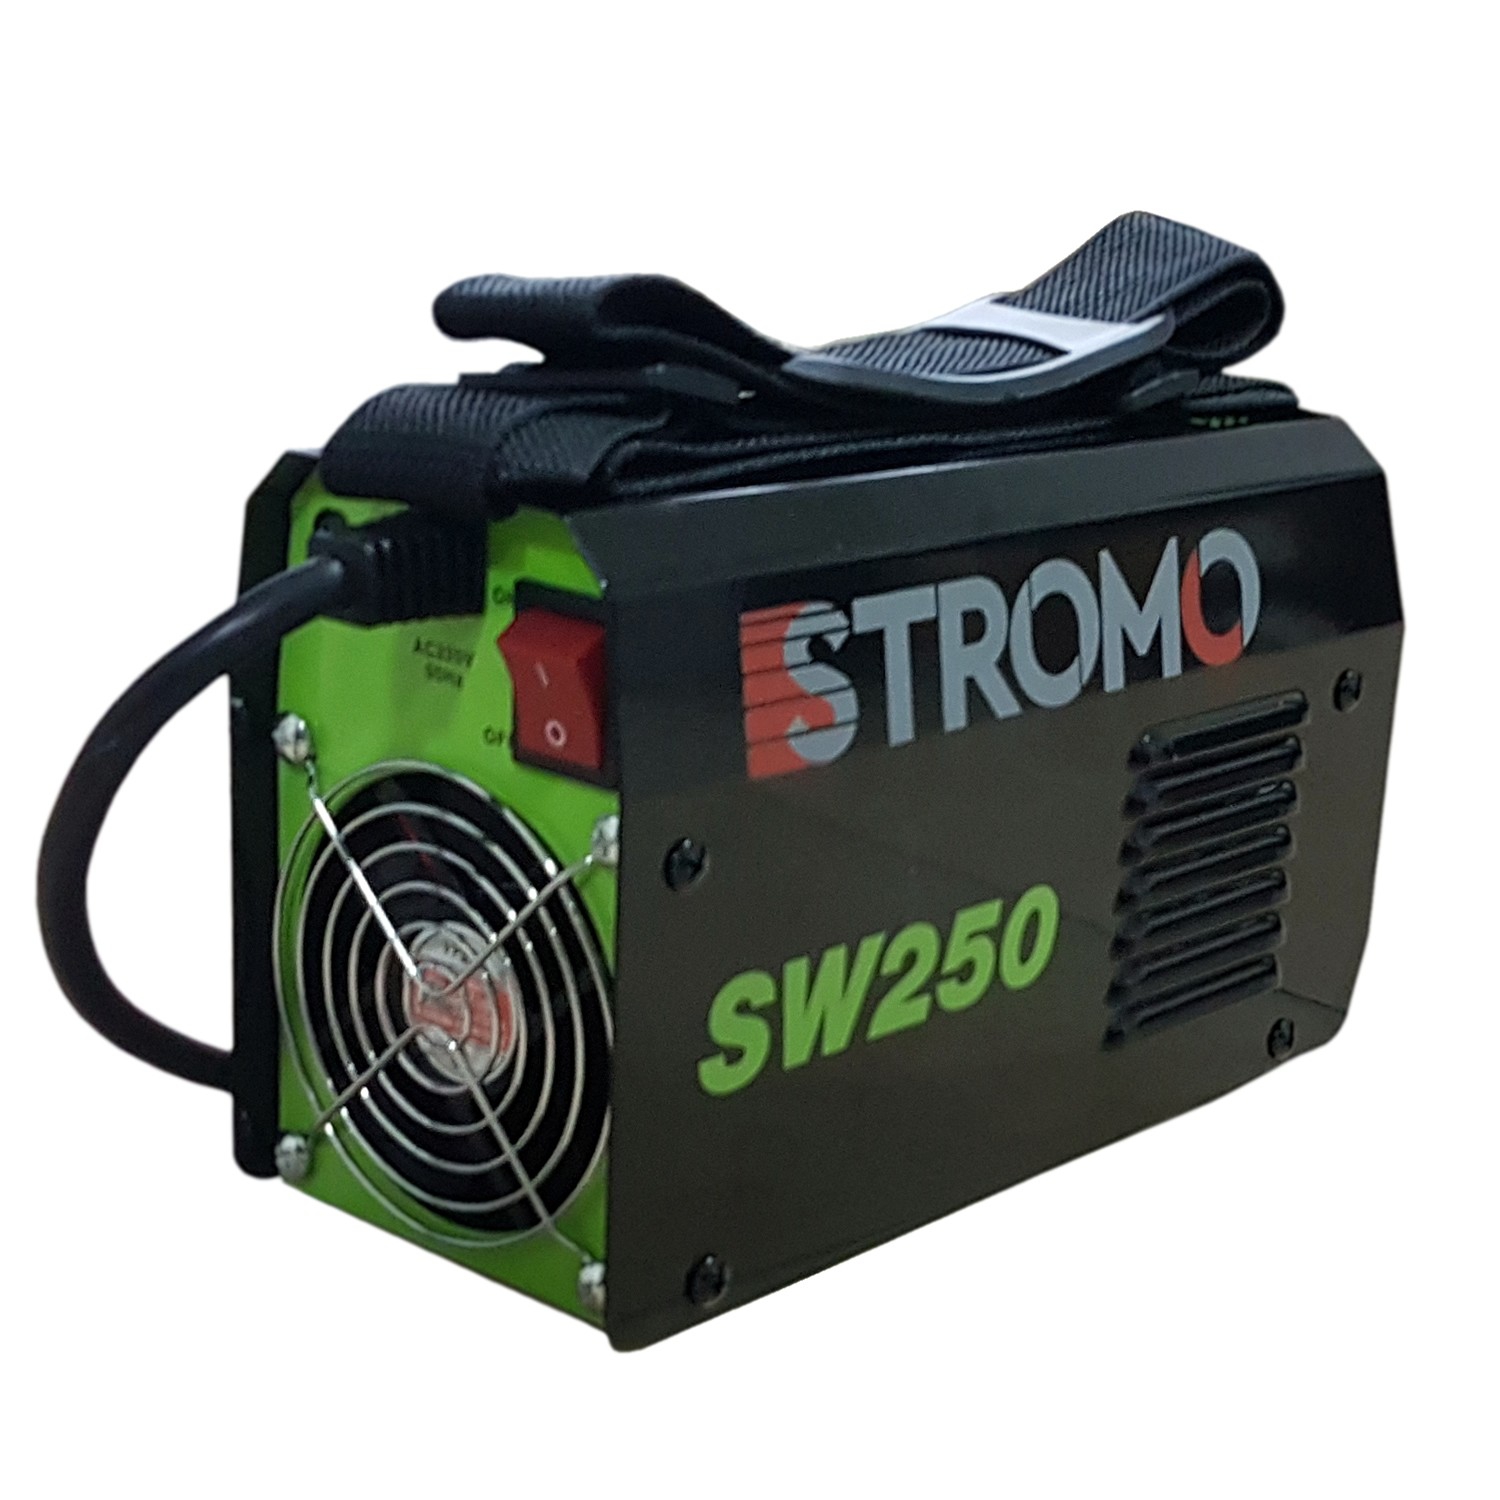 Купить бытовой сварочный. Сварочный аппарат Stromo SW-250. Сварочный аппарат Stromo sw260. Сварочный аппарат Стромо 295. Инверторный сварочный аппарат Stromo SW 250.